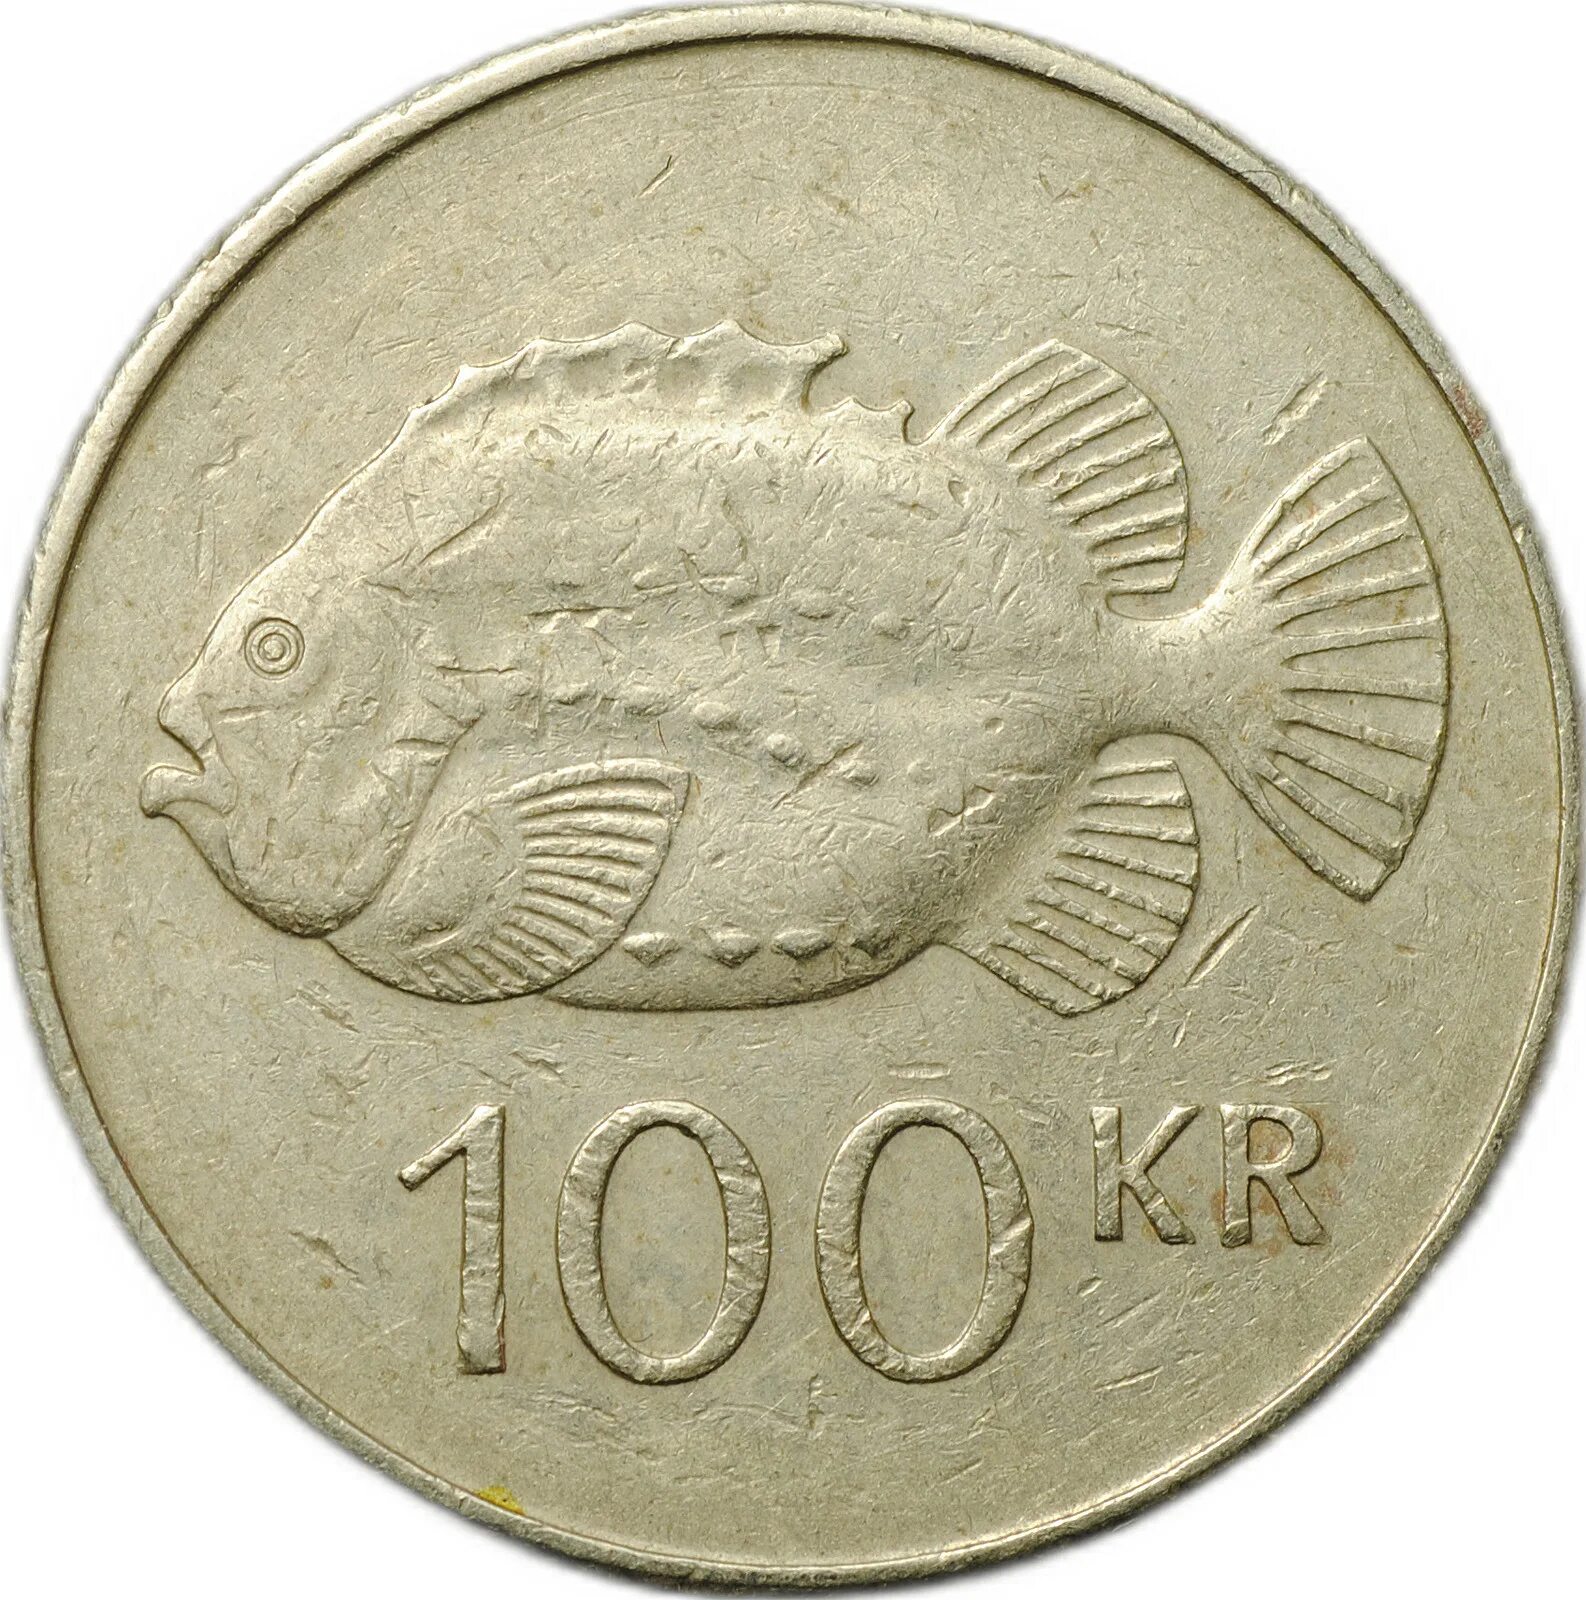 100 крон. Монеты Исландия 1959. Монеты Исландии каталог.